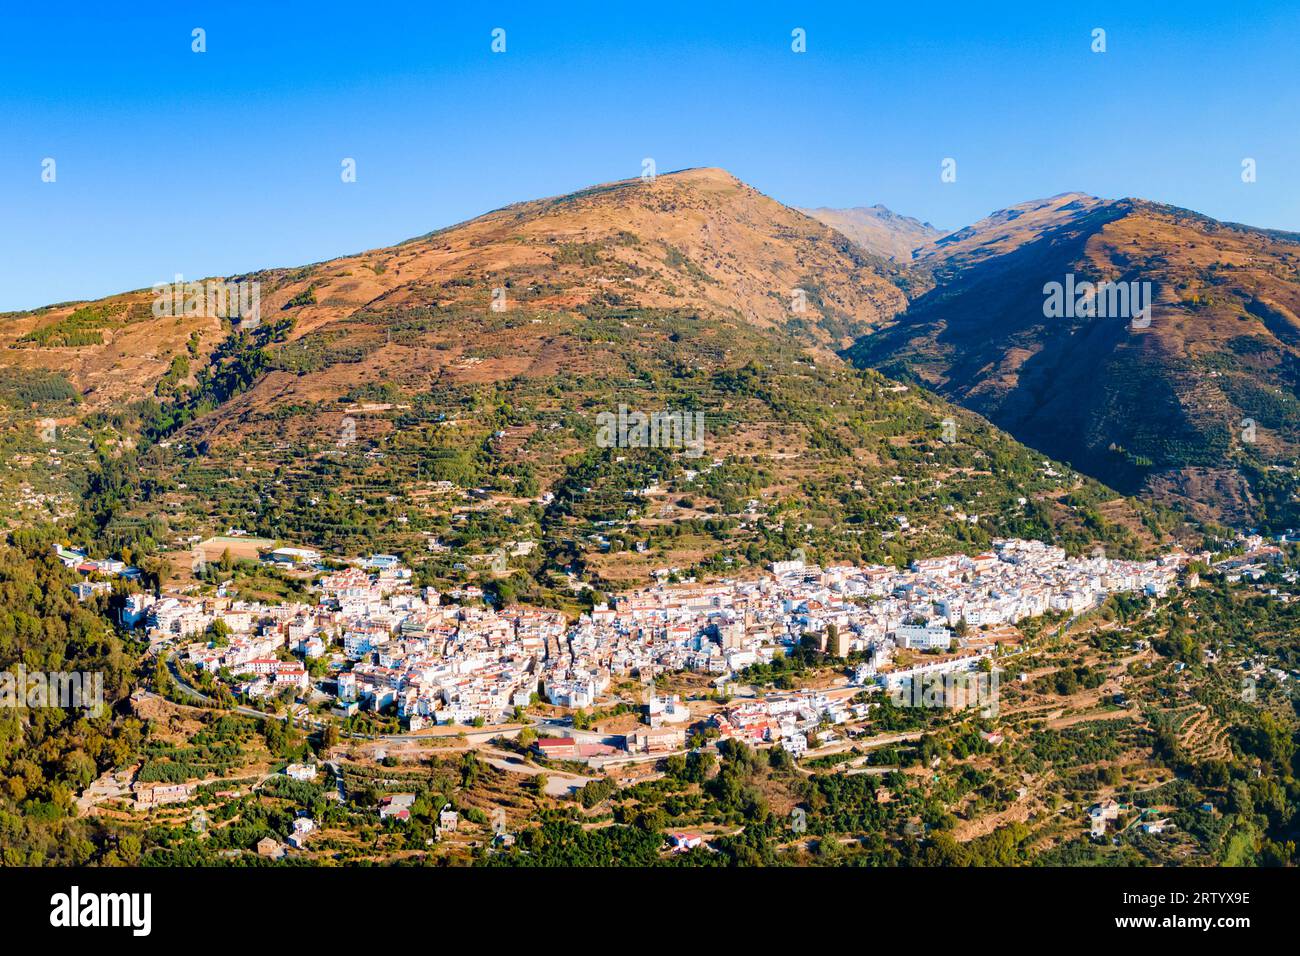 Vista panoramica aerea di Lanjaron. Lanjaron è una città della Spagna, situata nella zona di Alpujarras, in provincia di Granada. Foto Stock